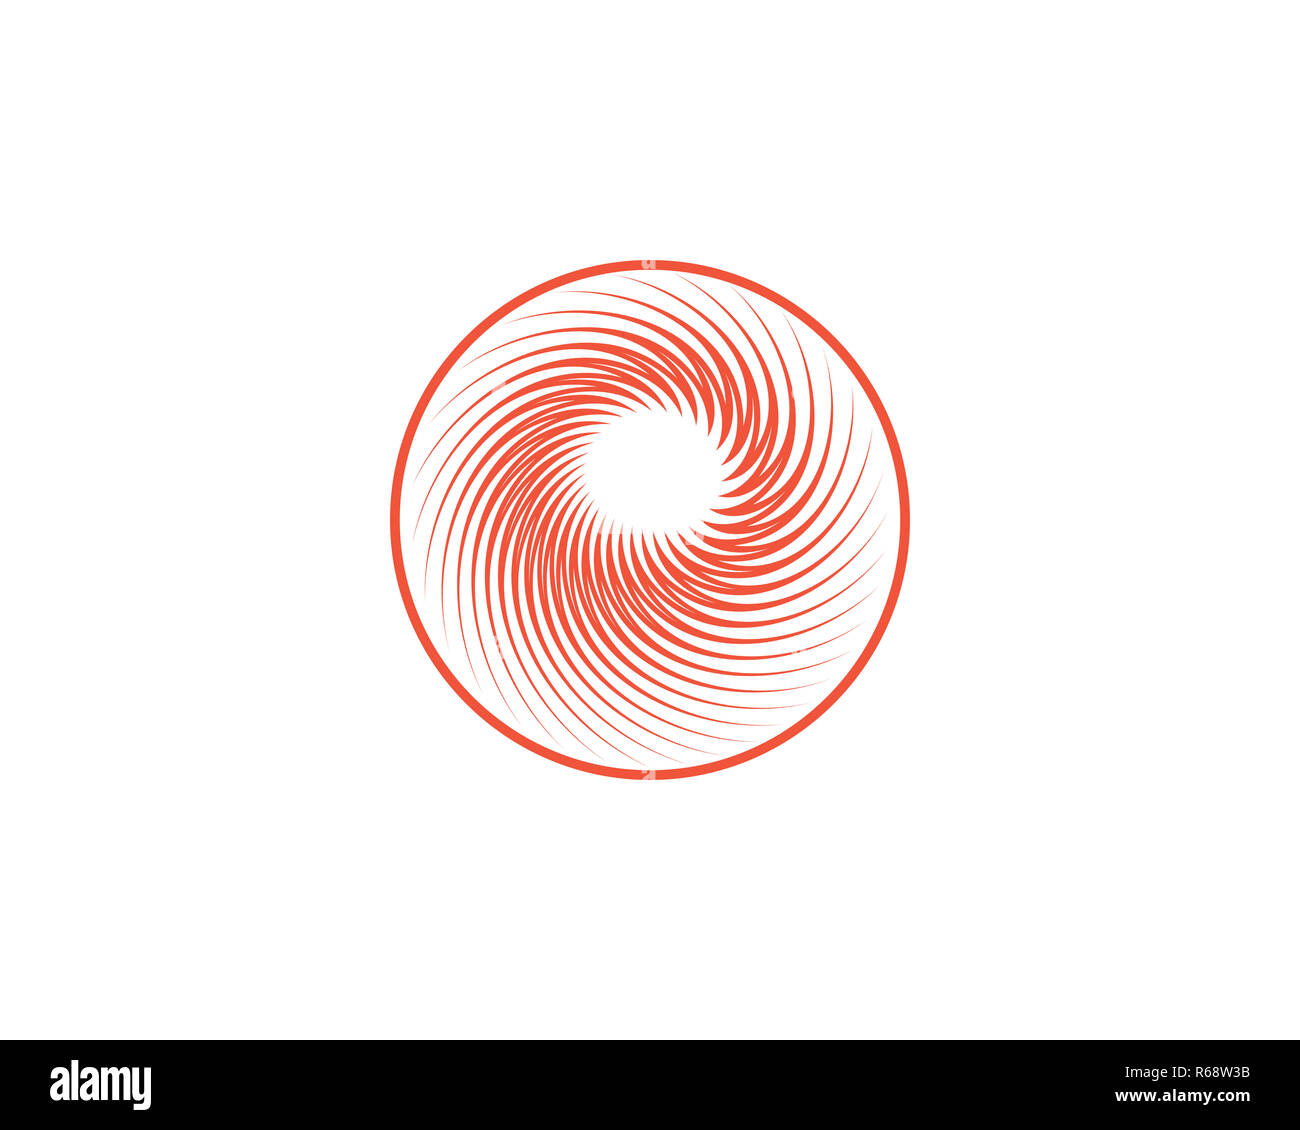 abstract circle logo Stock Photo